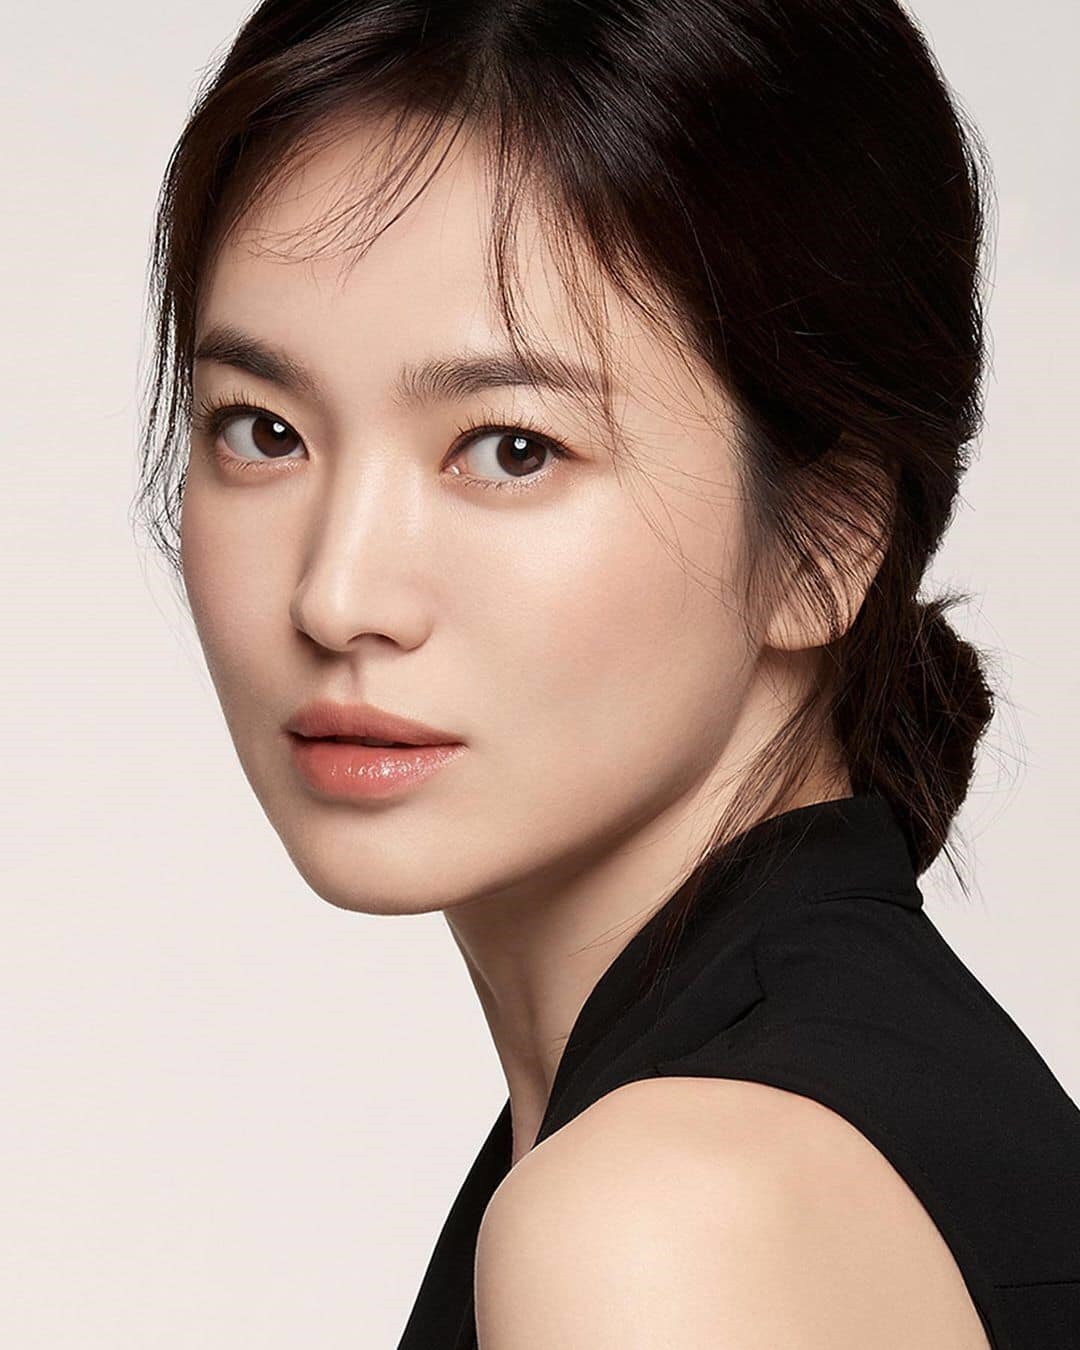 Song Hye Kyo đẹp mê mẩn trong bộ ảnh quảng cáo mới 